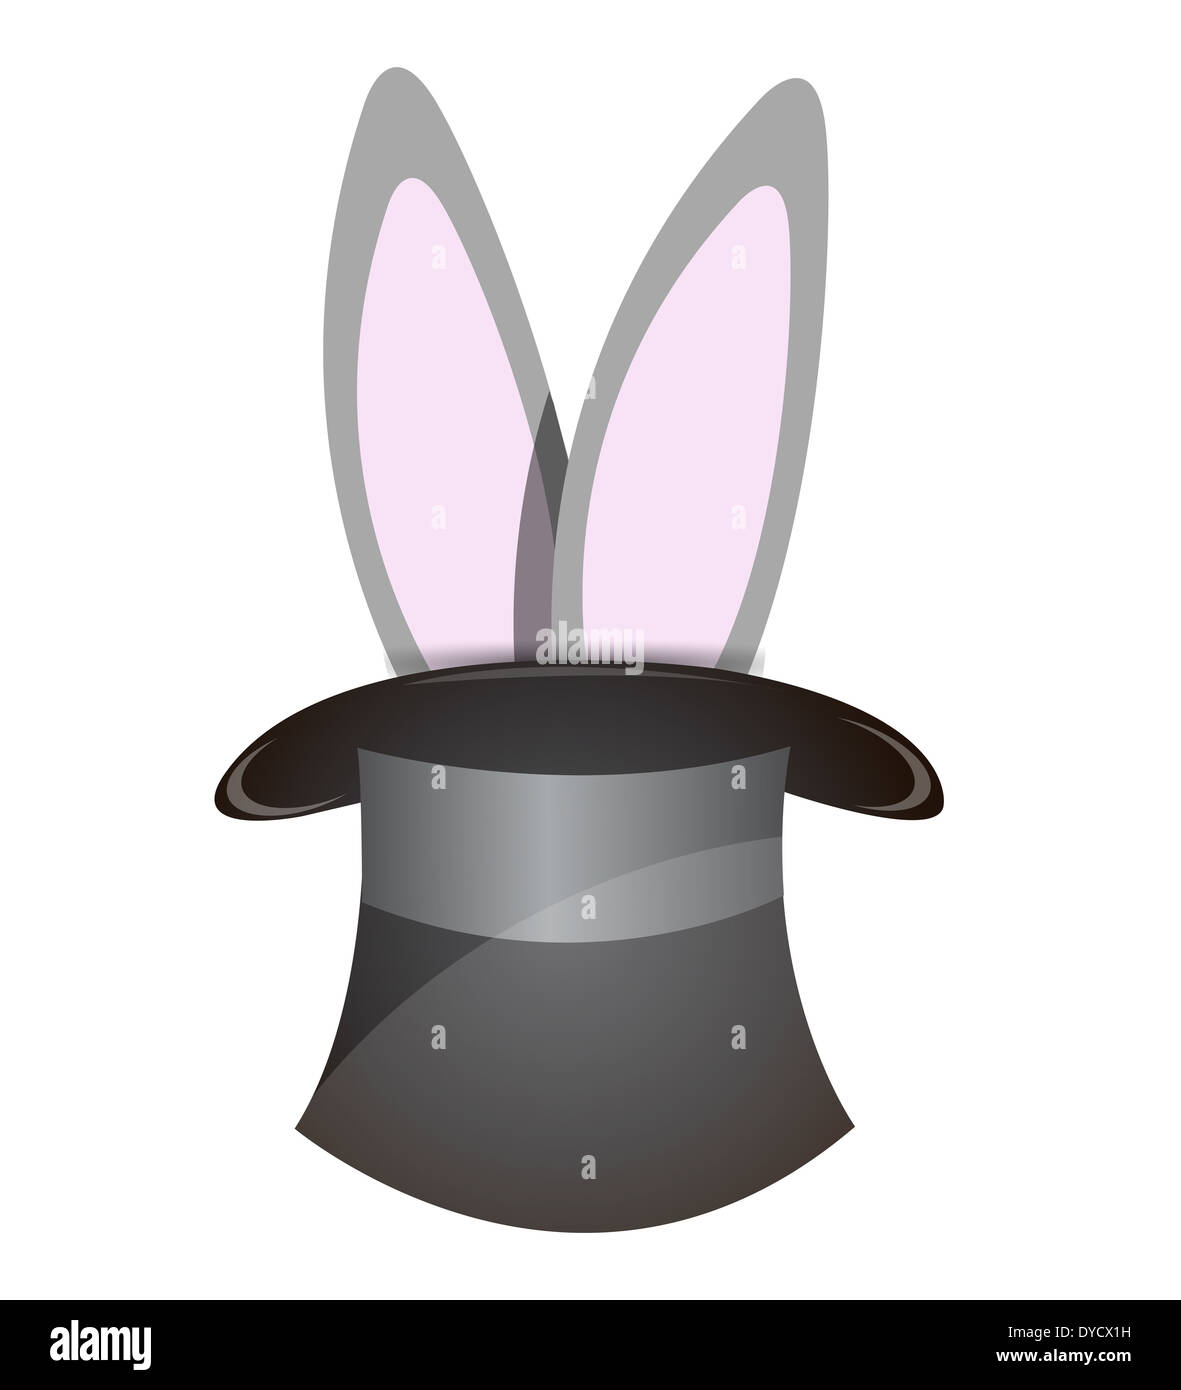 Coniglio che esce da un cappello illustration design su bianco Foto stock -  Alamy